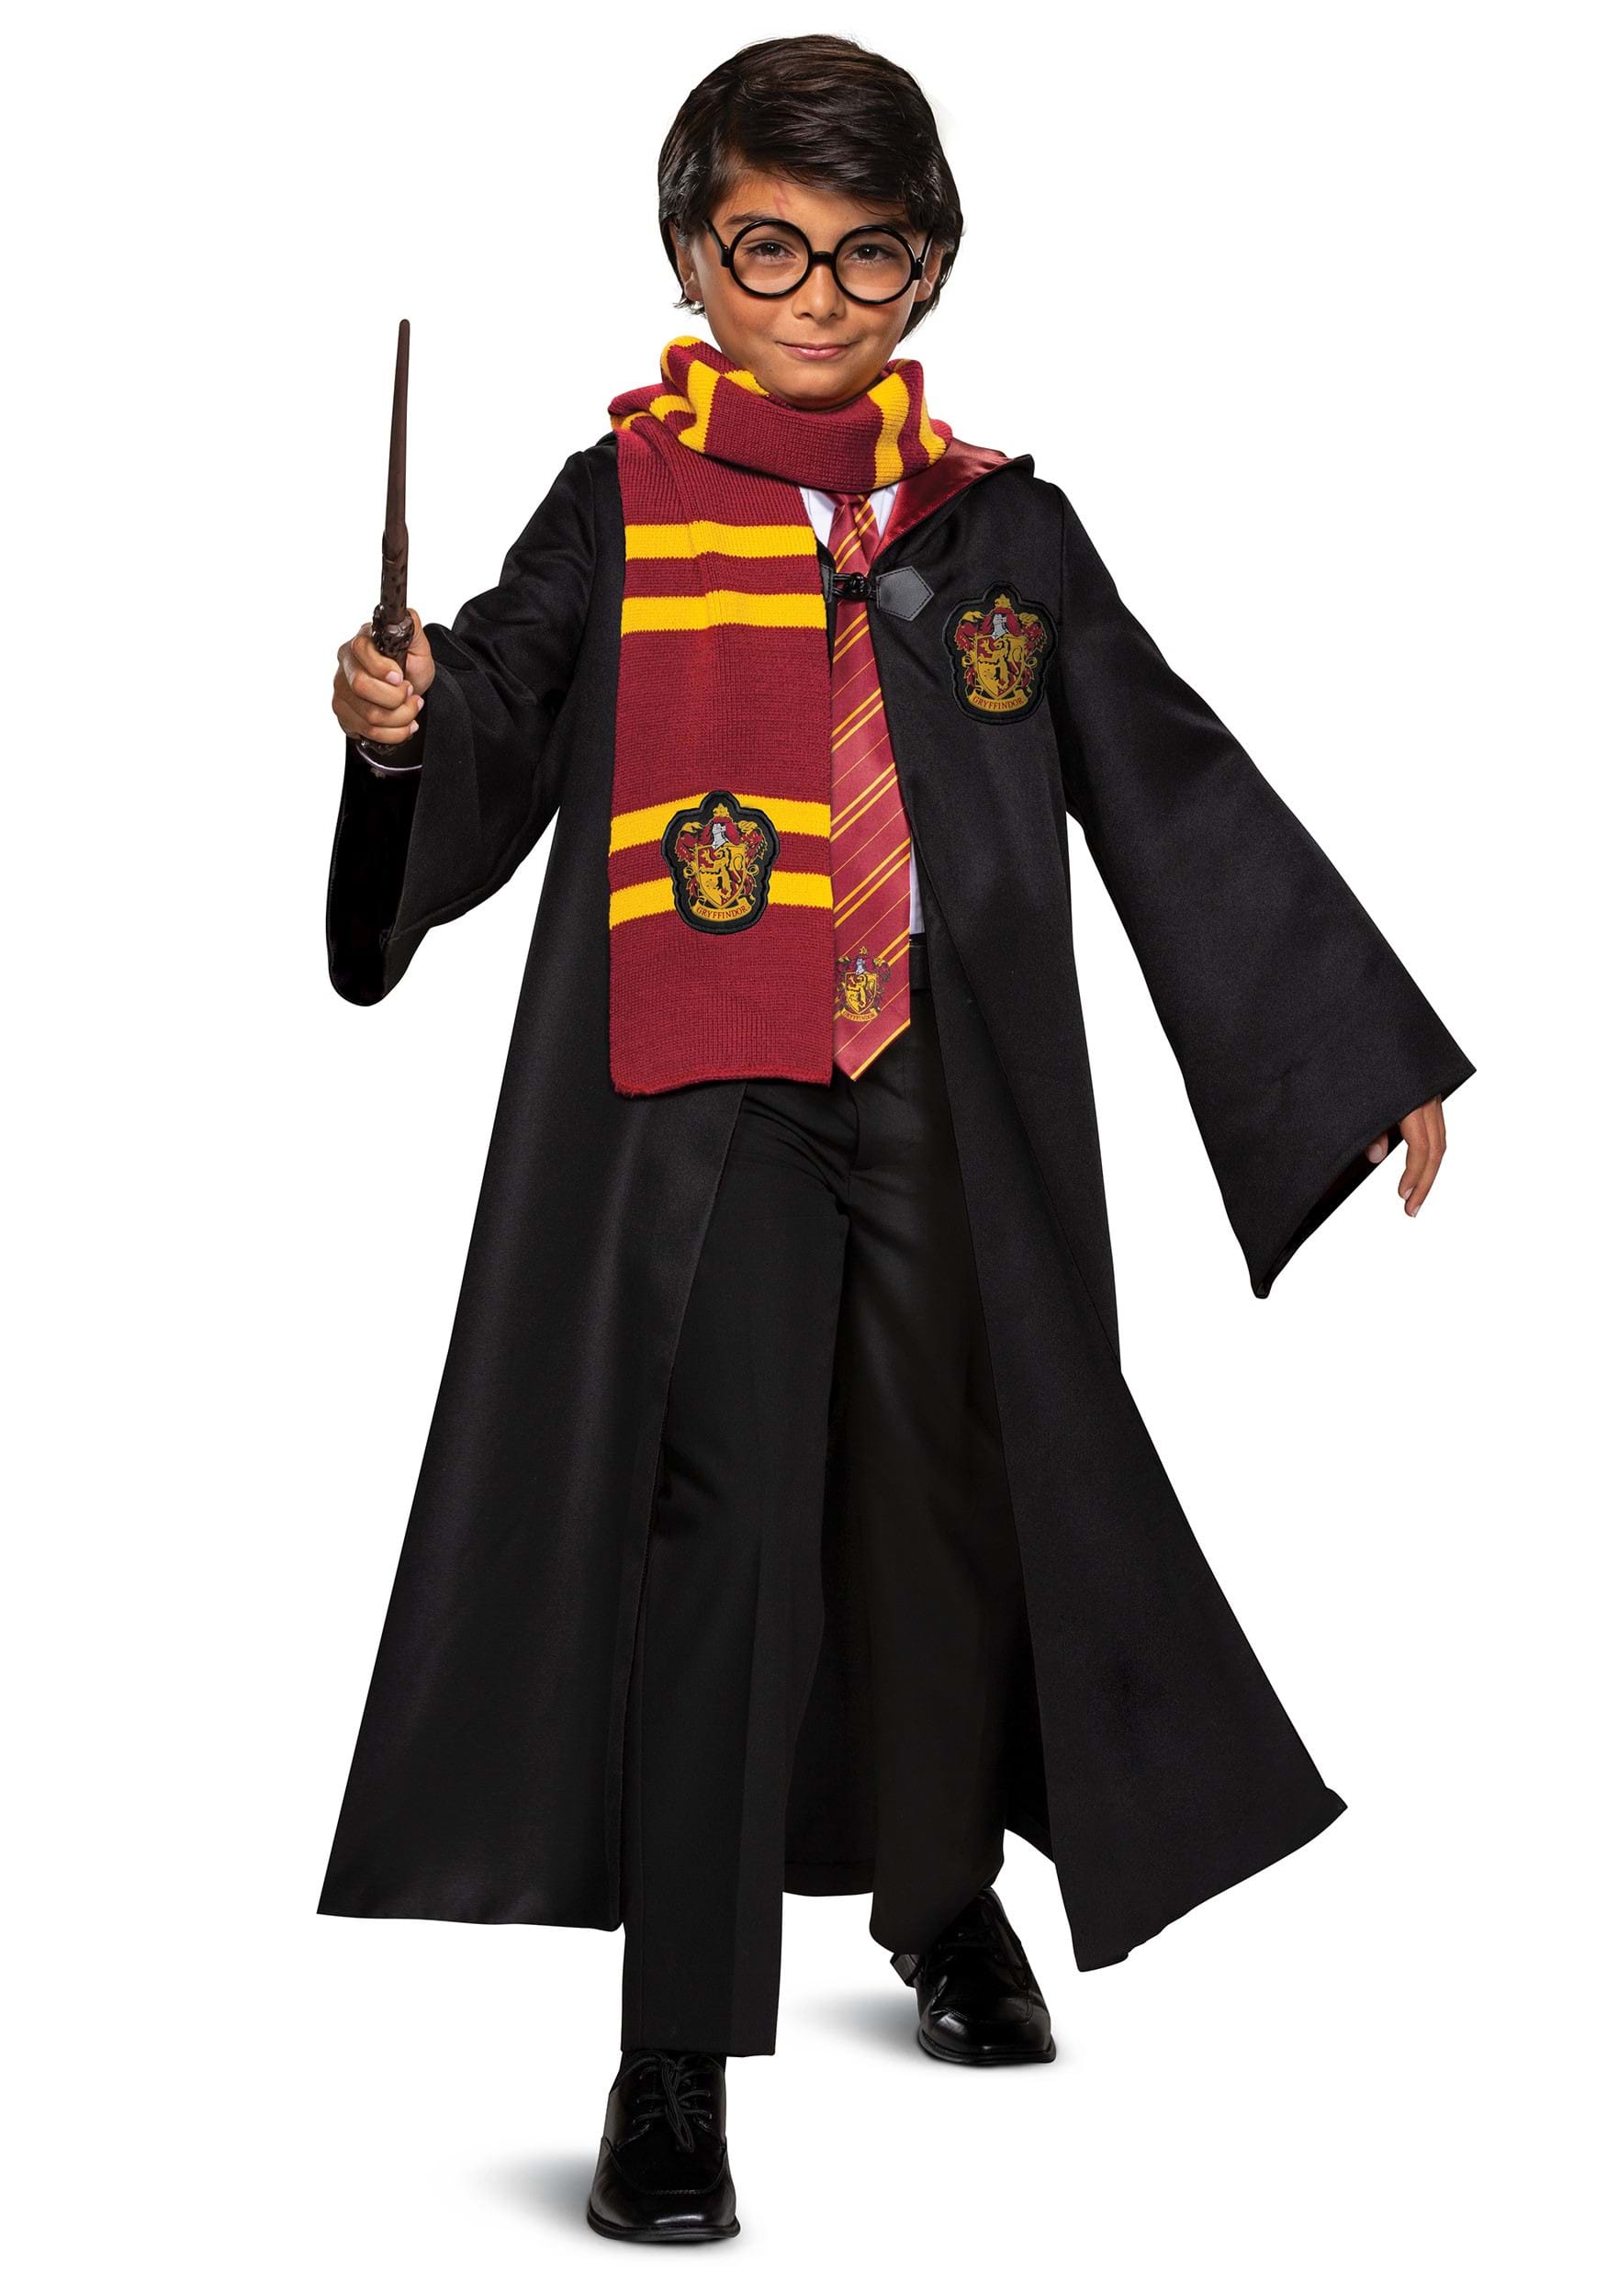 Harry Potter Trunk Costume Kit for Kids